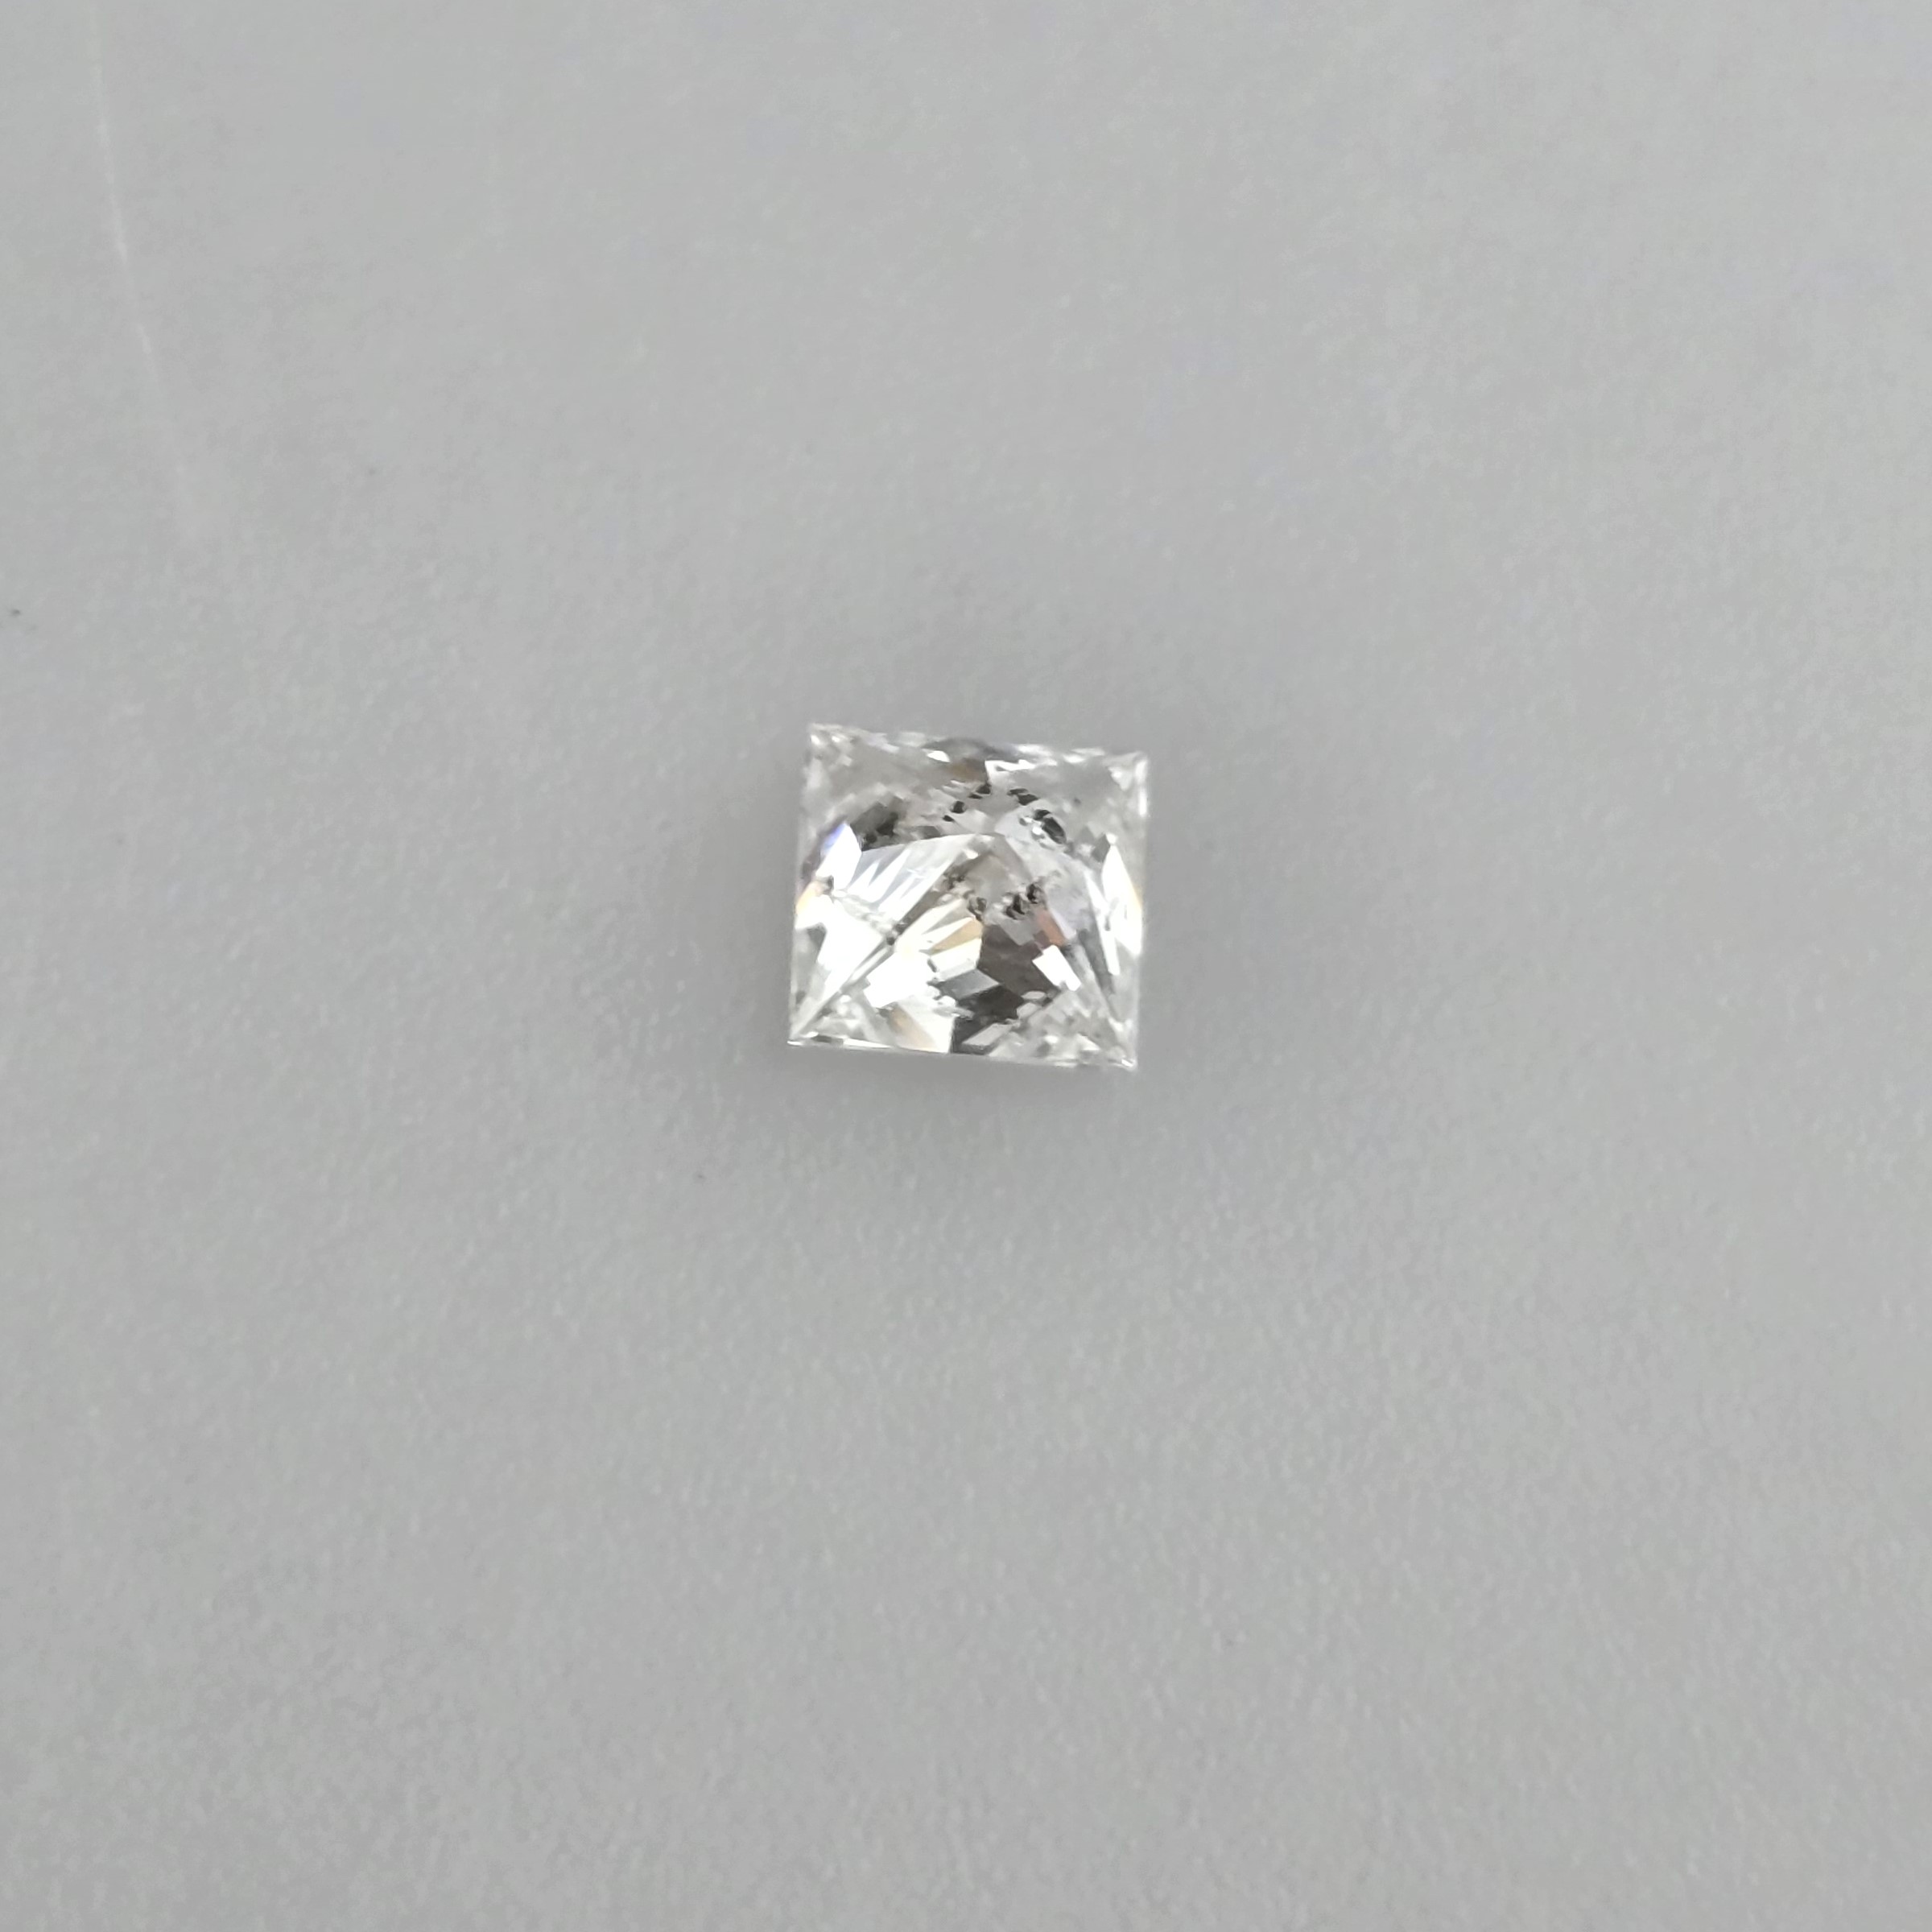 Loser natürlicher Diamant mit Lasersignatur - Gewicht 0,80 ct., Prinzessschliff, Farbe: G, Reinheit - Image 5 of 7